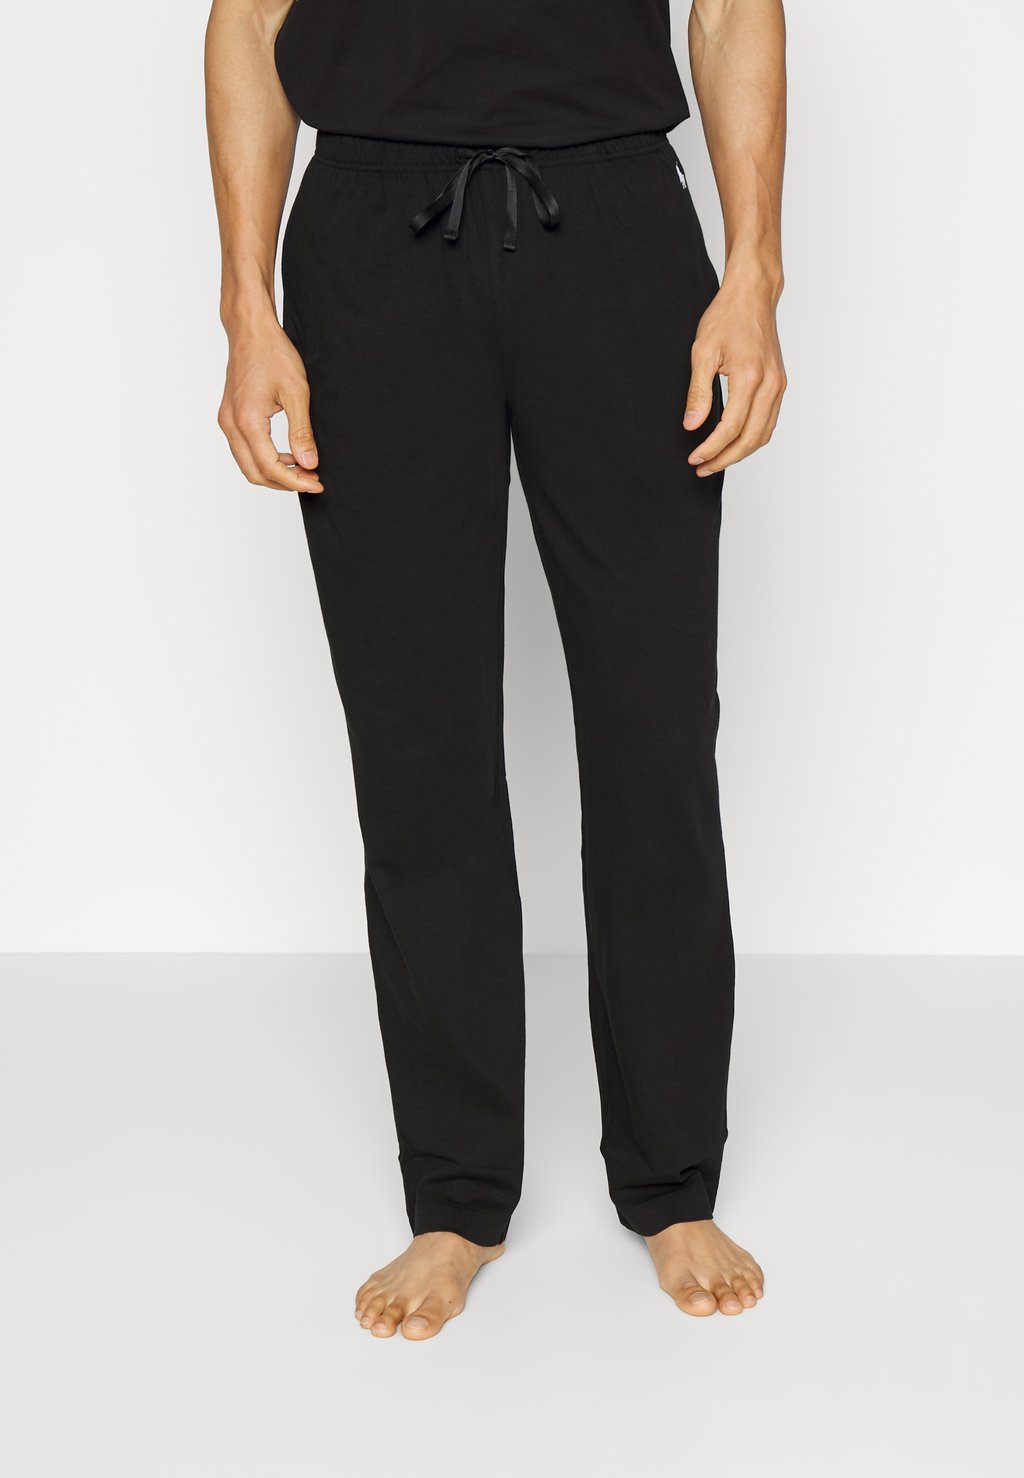 Пижамные брюки БРЮКИ Polo Ralph Lauren, черные